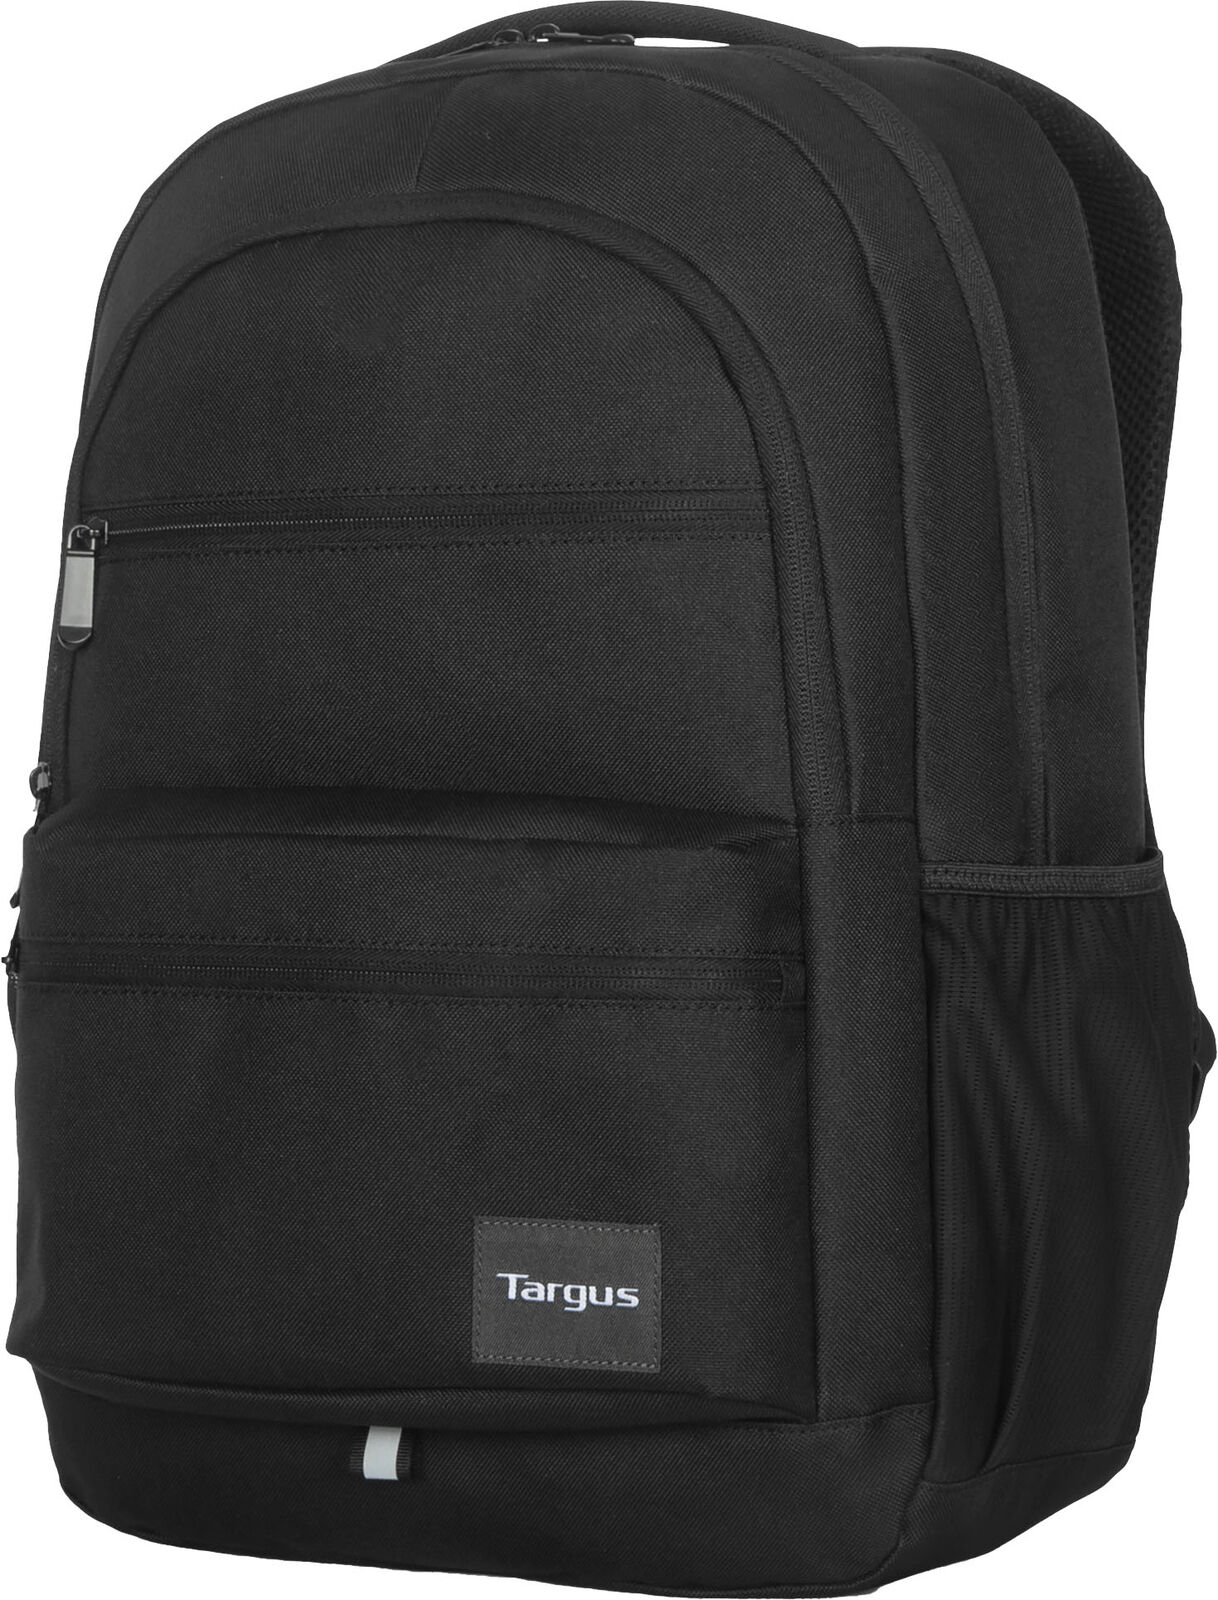 Targus - Octave III Backpack for 15.6Laptops - Black